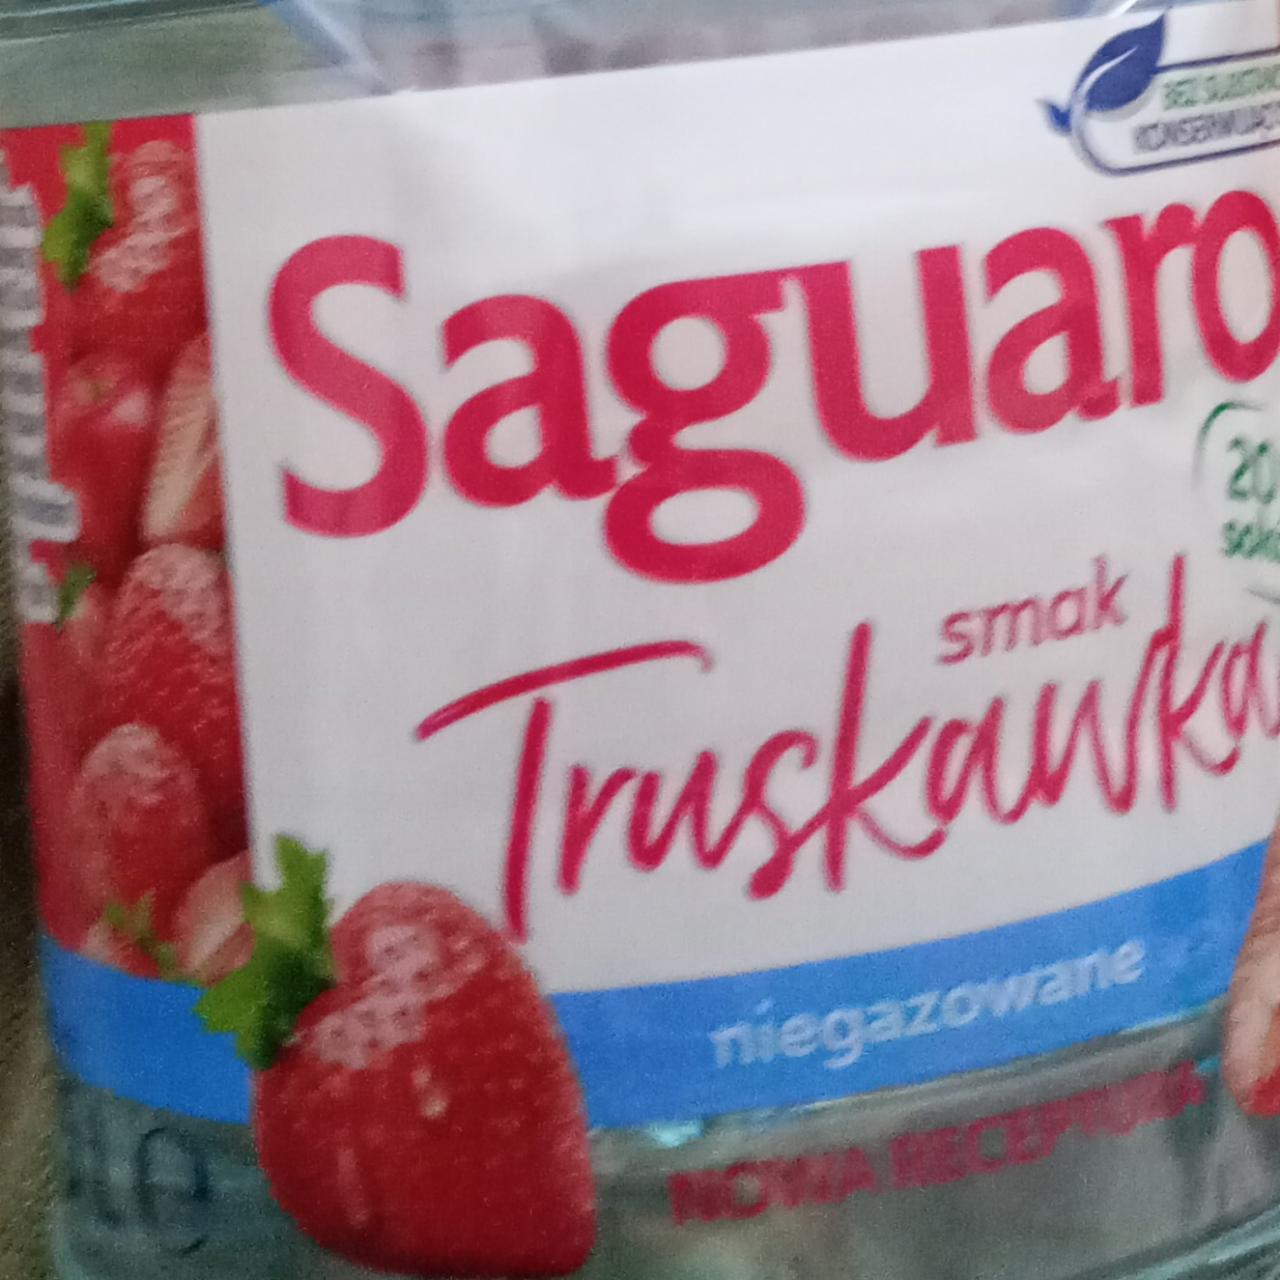 Zdjęcia - Saguaro smak truskawka niegazowana